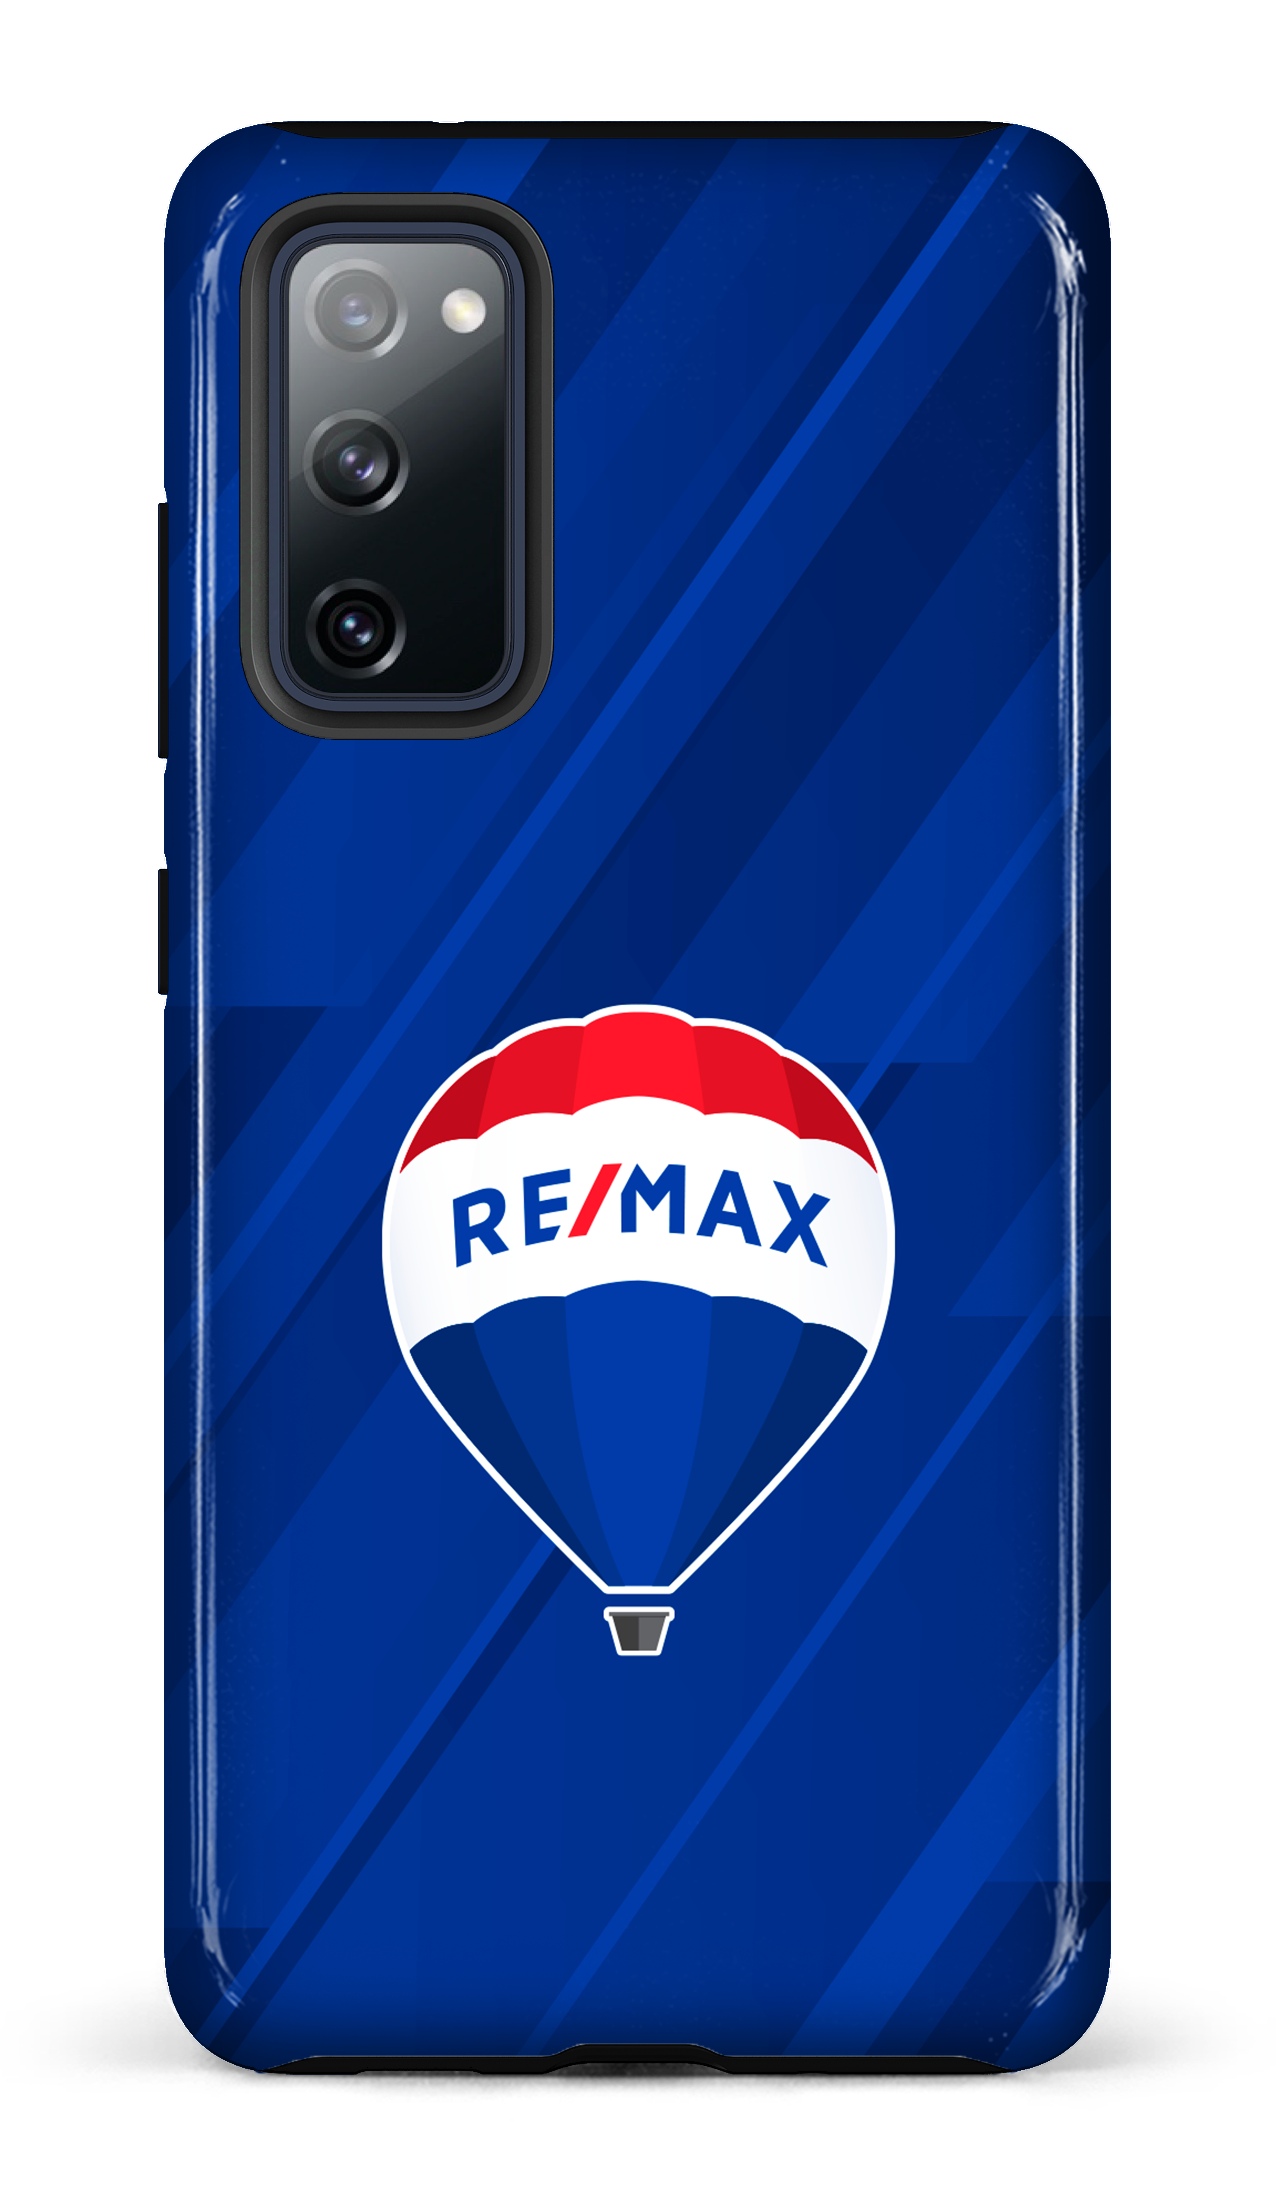 Remax Bleu - Galaxy S20 FE